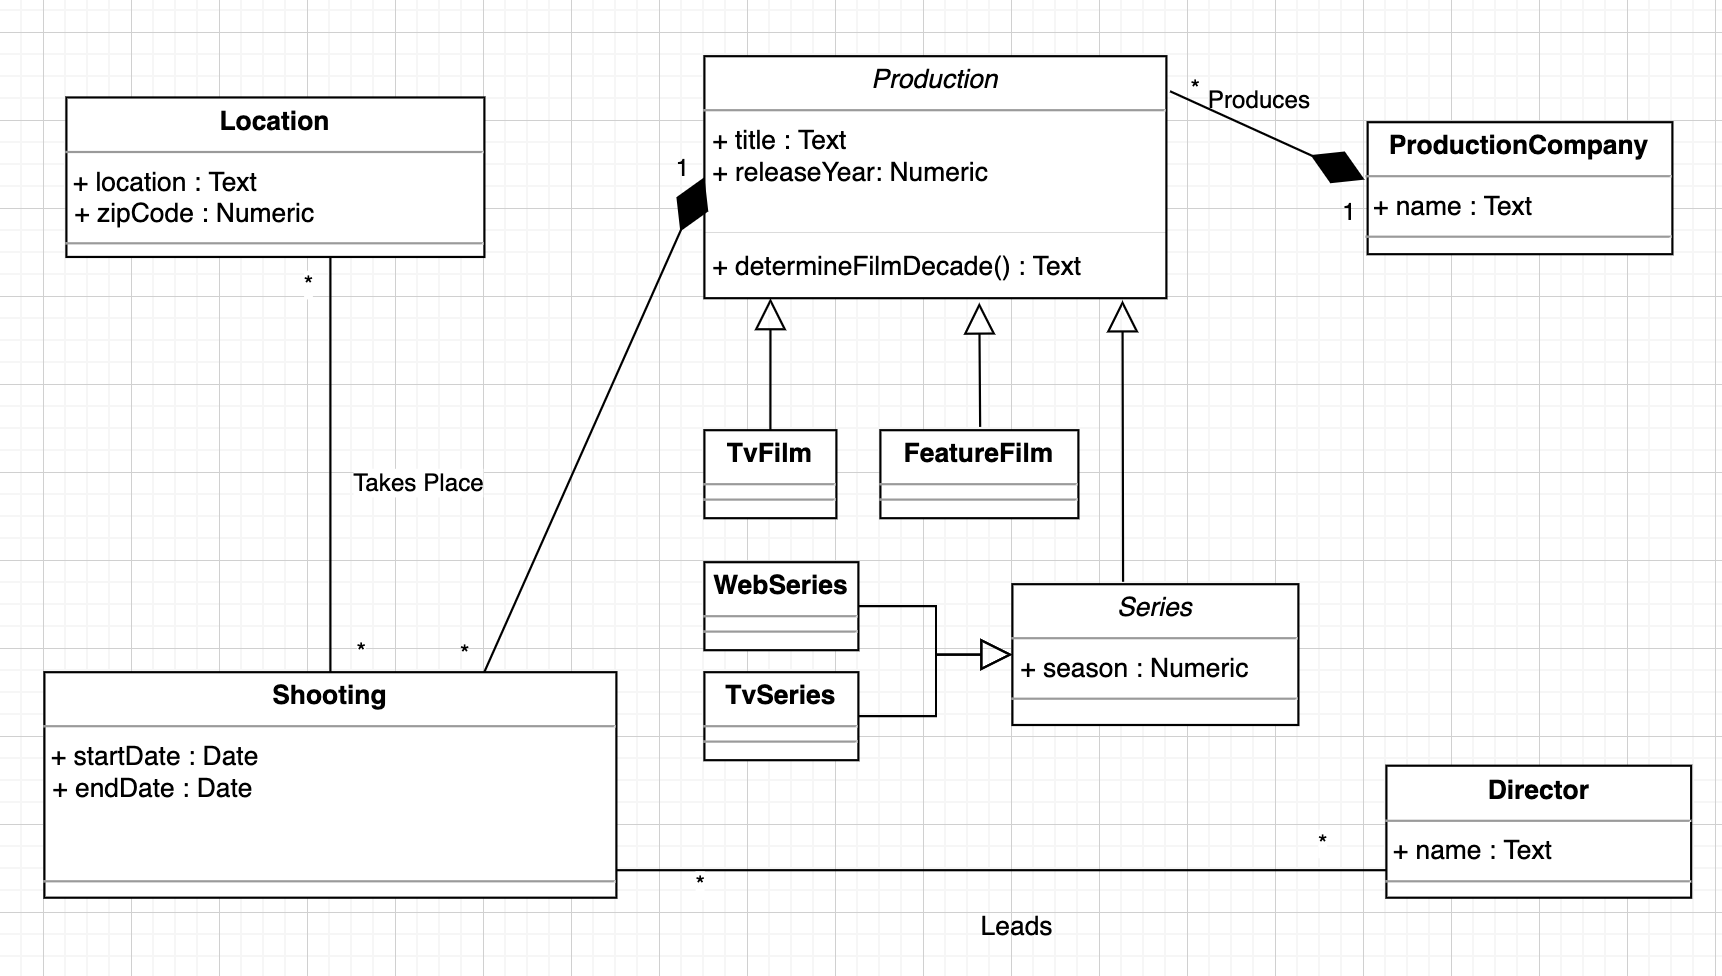 Updated UML diagram